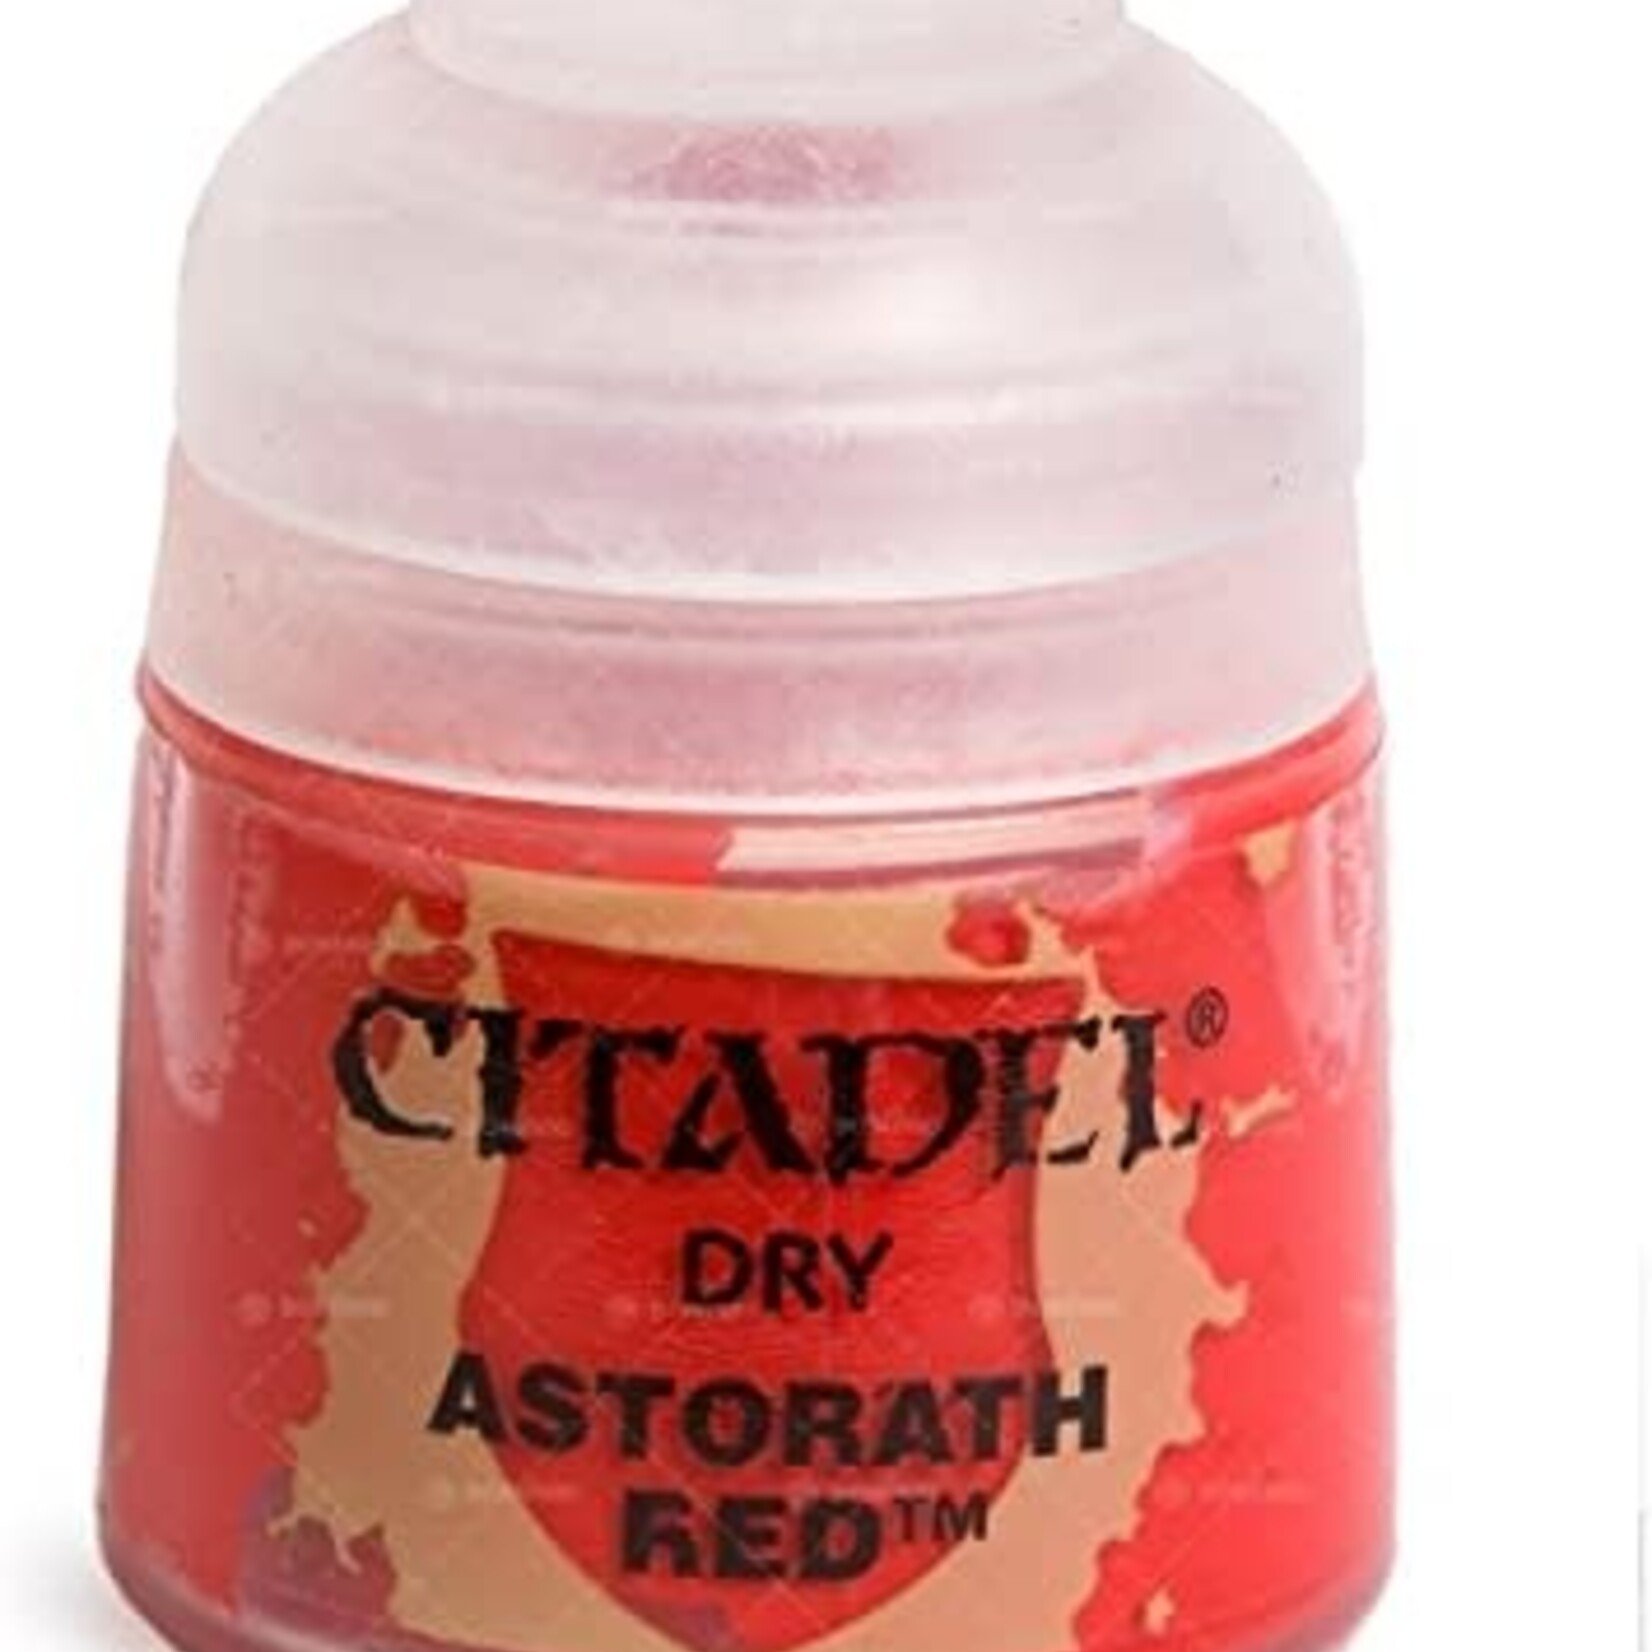 Games Workshop Citadel - Dry - Astorath Red